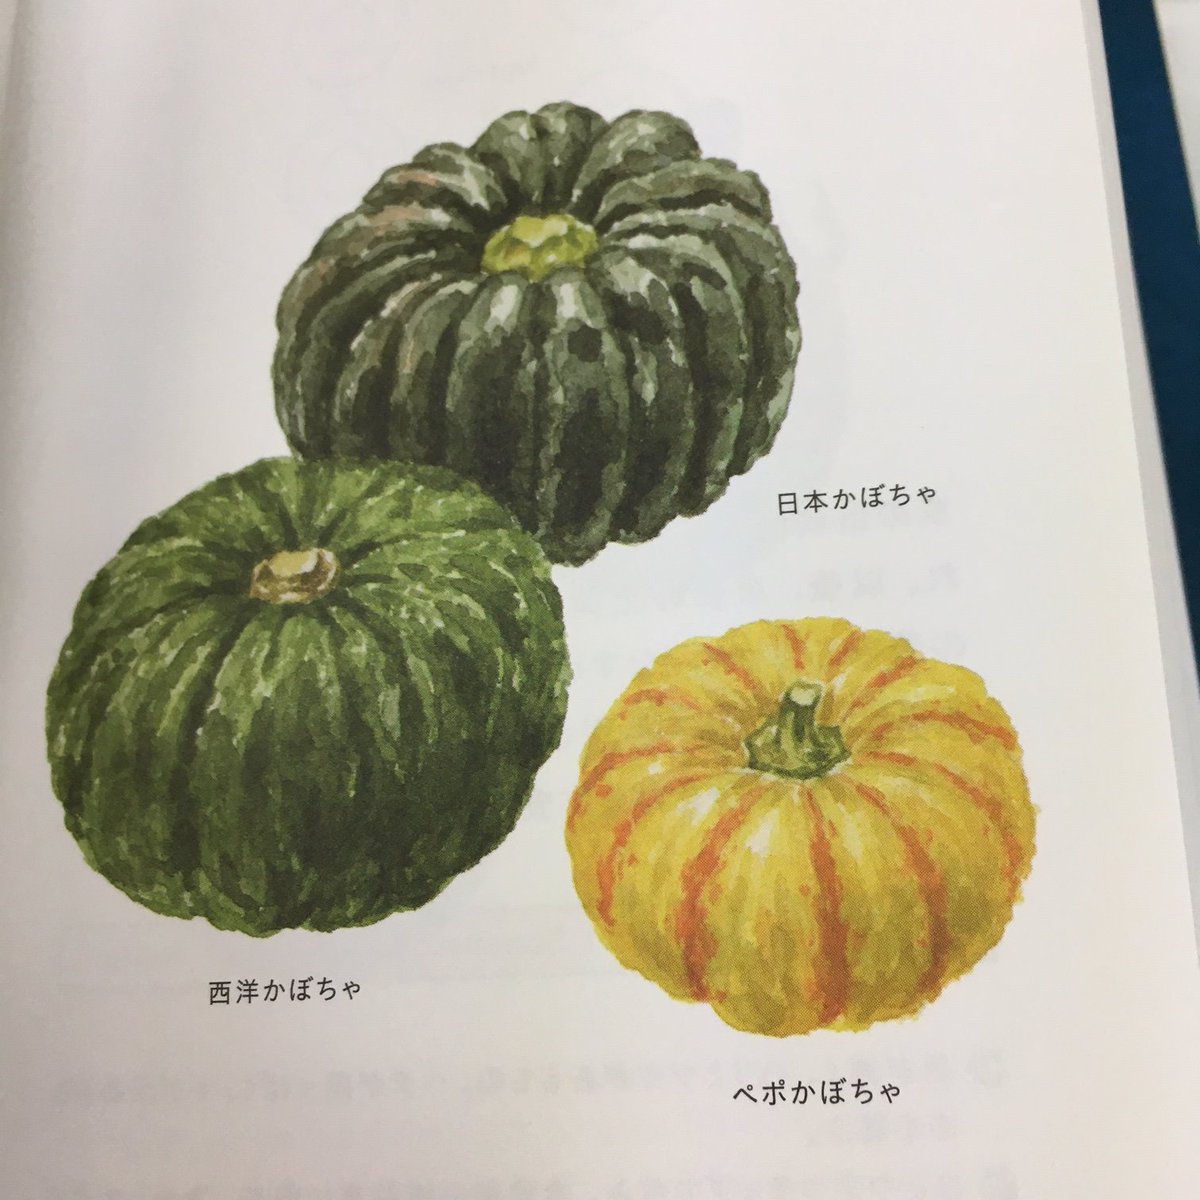 雷鳥社 No Twitter 菜の辞典 に載っている野菜 かぼちゃ 日本かぼちゃ 西洋かぼちゃ ぺポかぼちゃ イラストで見るとどれもかわいいのに かぼちゃは頑丈に出来ています 皮が硬いので電子レンジで2 3分加熱してから切ると良い 本文より だそう これなら